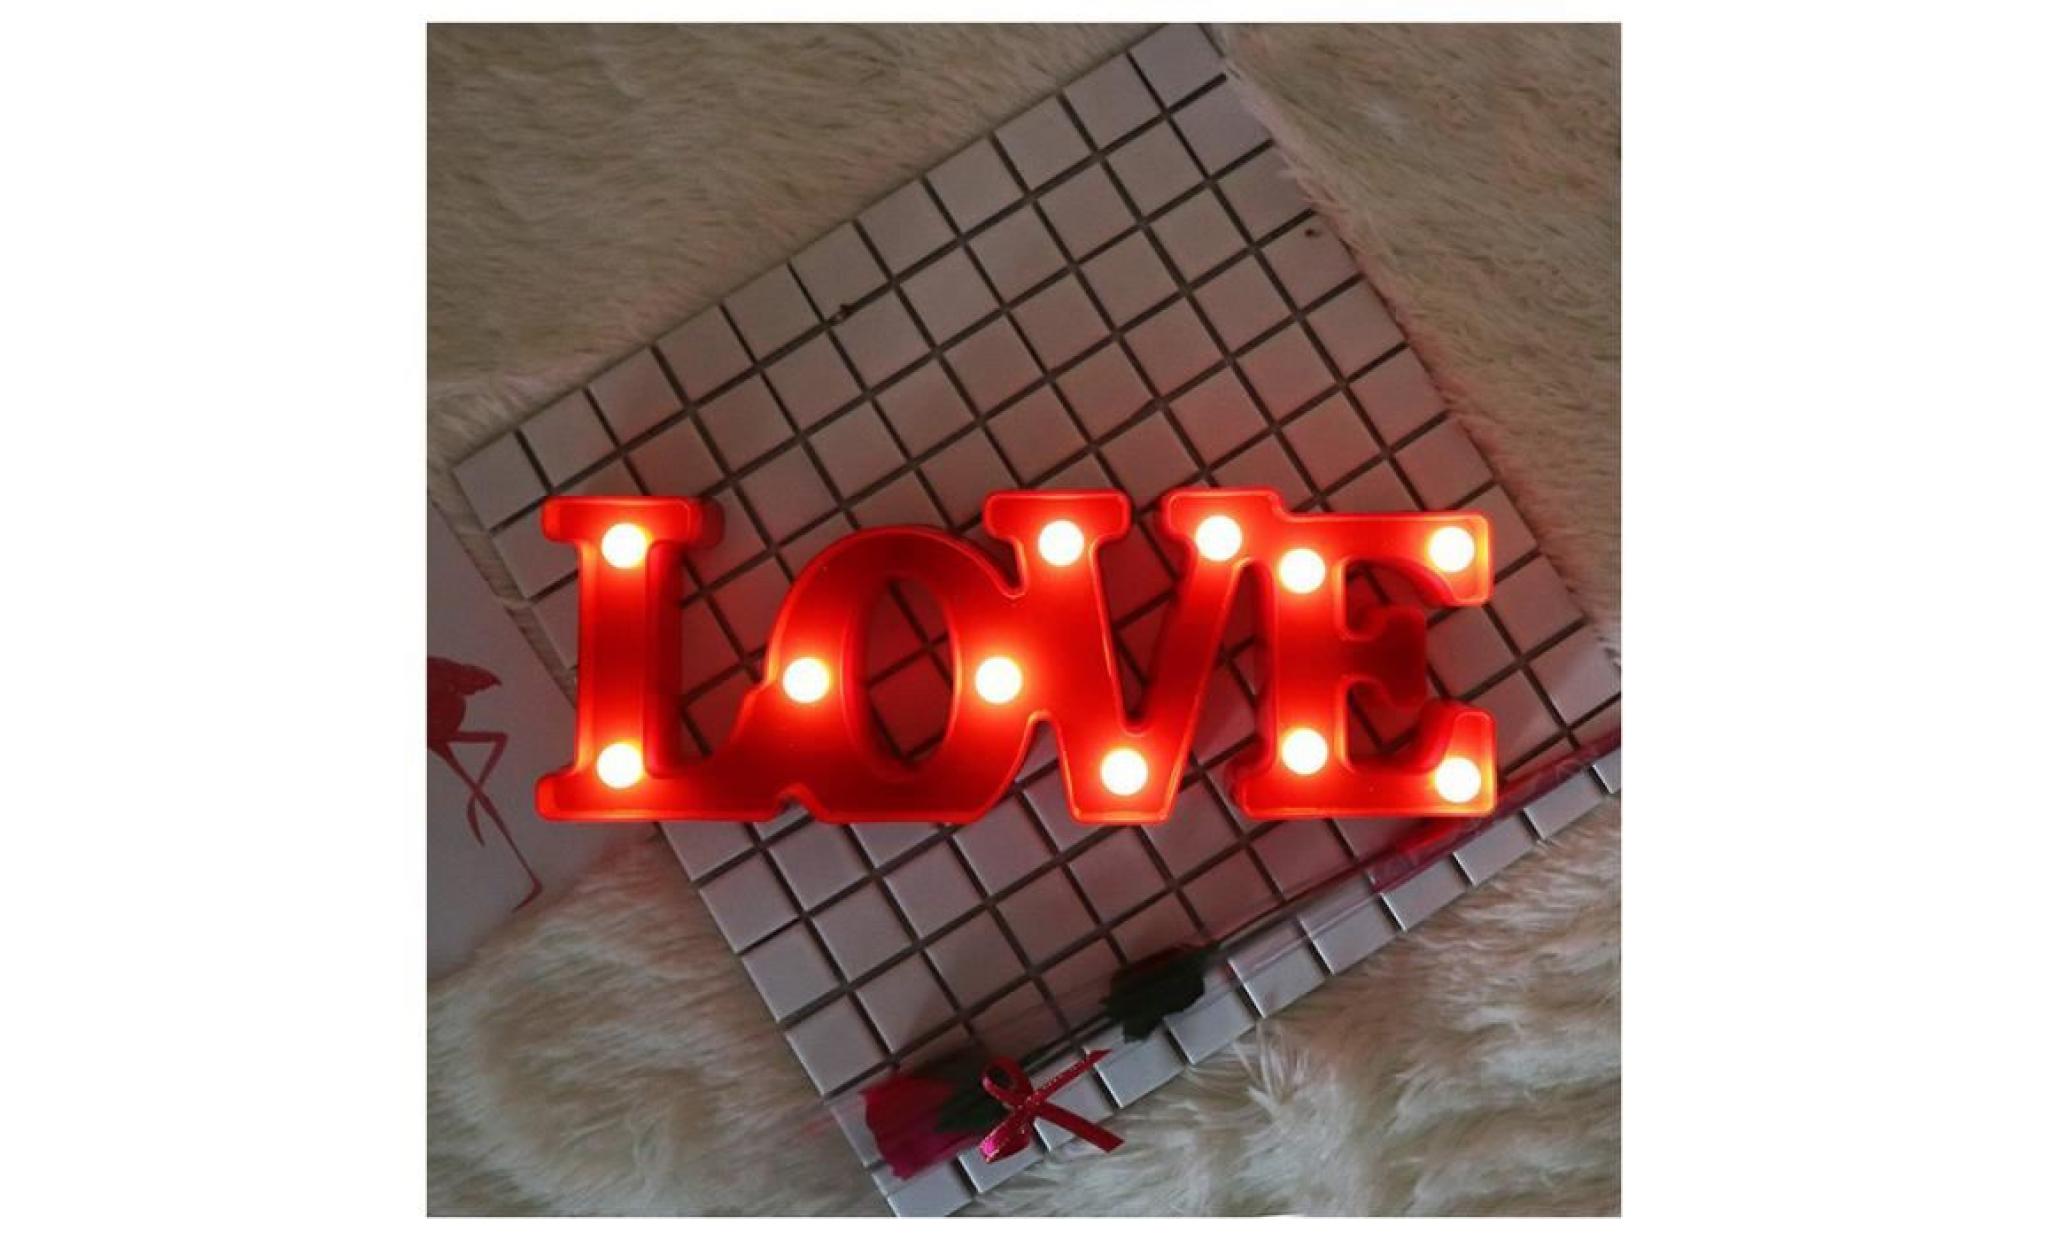 cadeau romantique 11 blanc douc led lampe 11.81pouces love batterie veuilleuse pour mariage valentine chambre decoration rouge pas cher